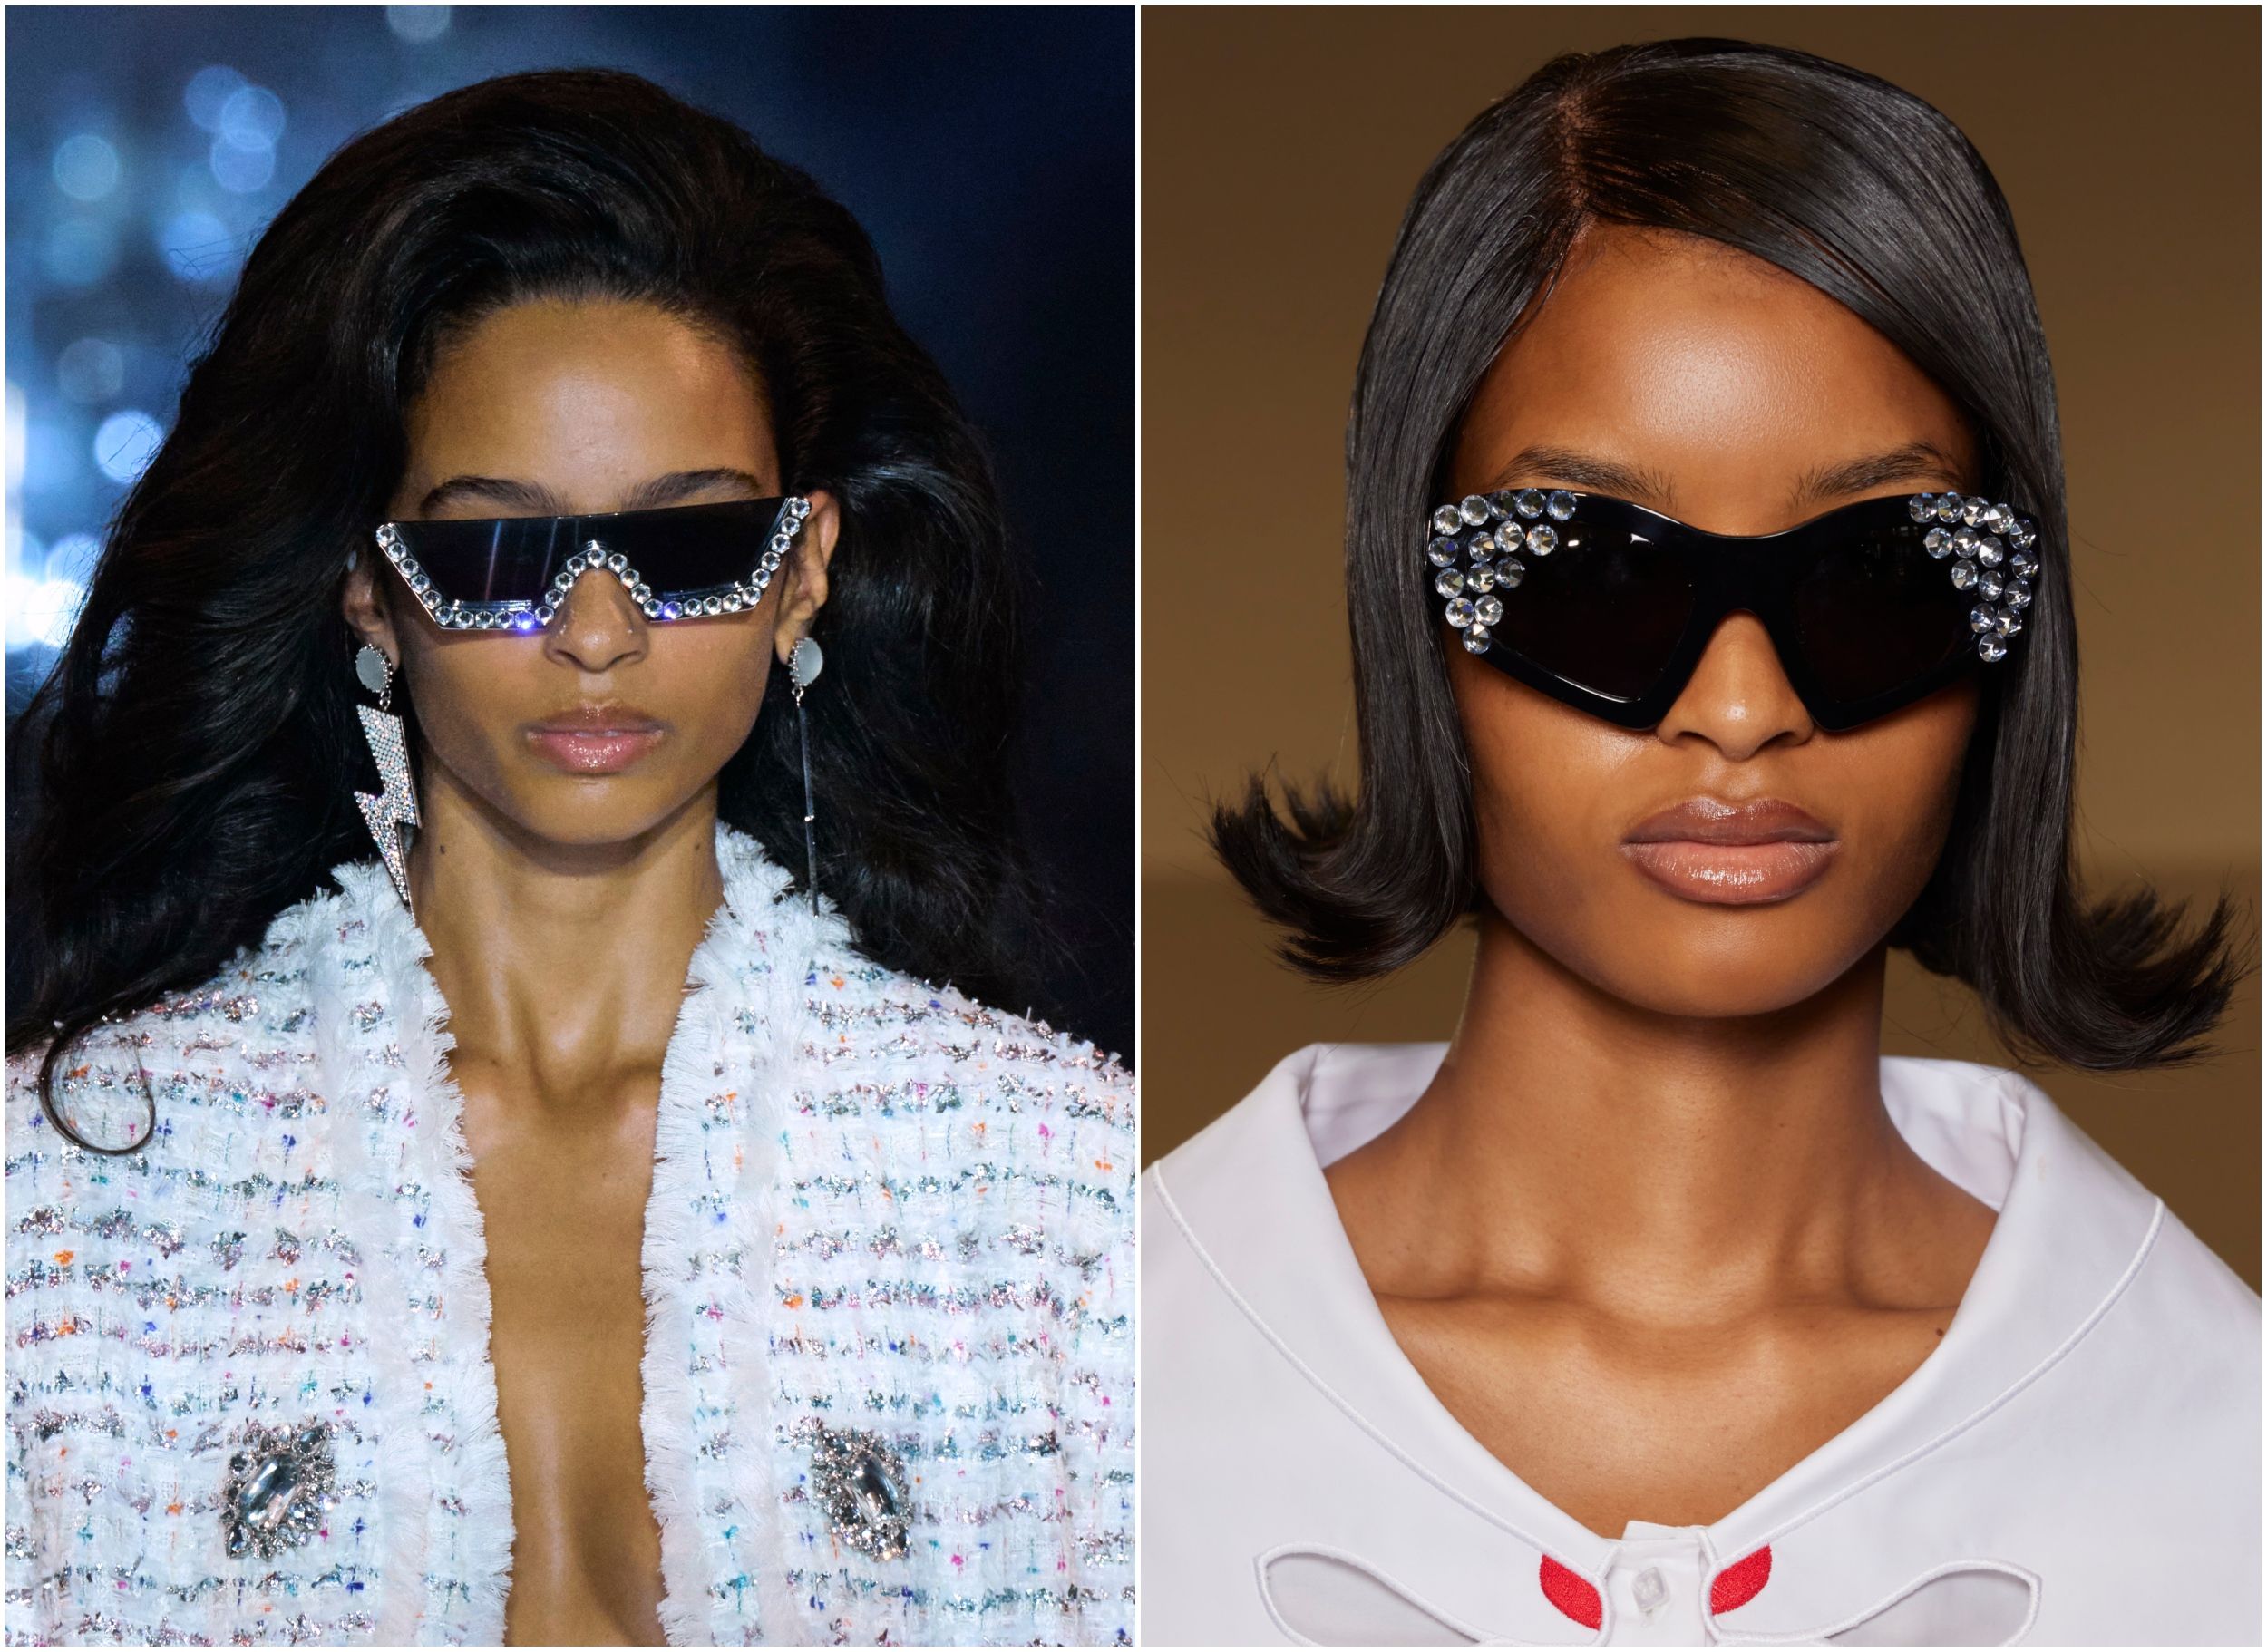 Los seis modelos de gafas de sol que más se llevan esta temporada